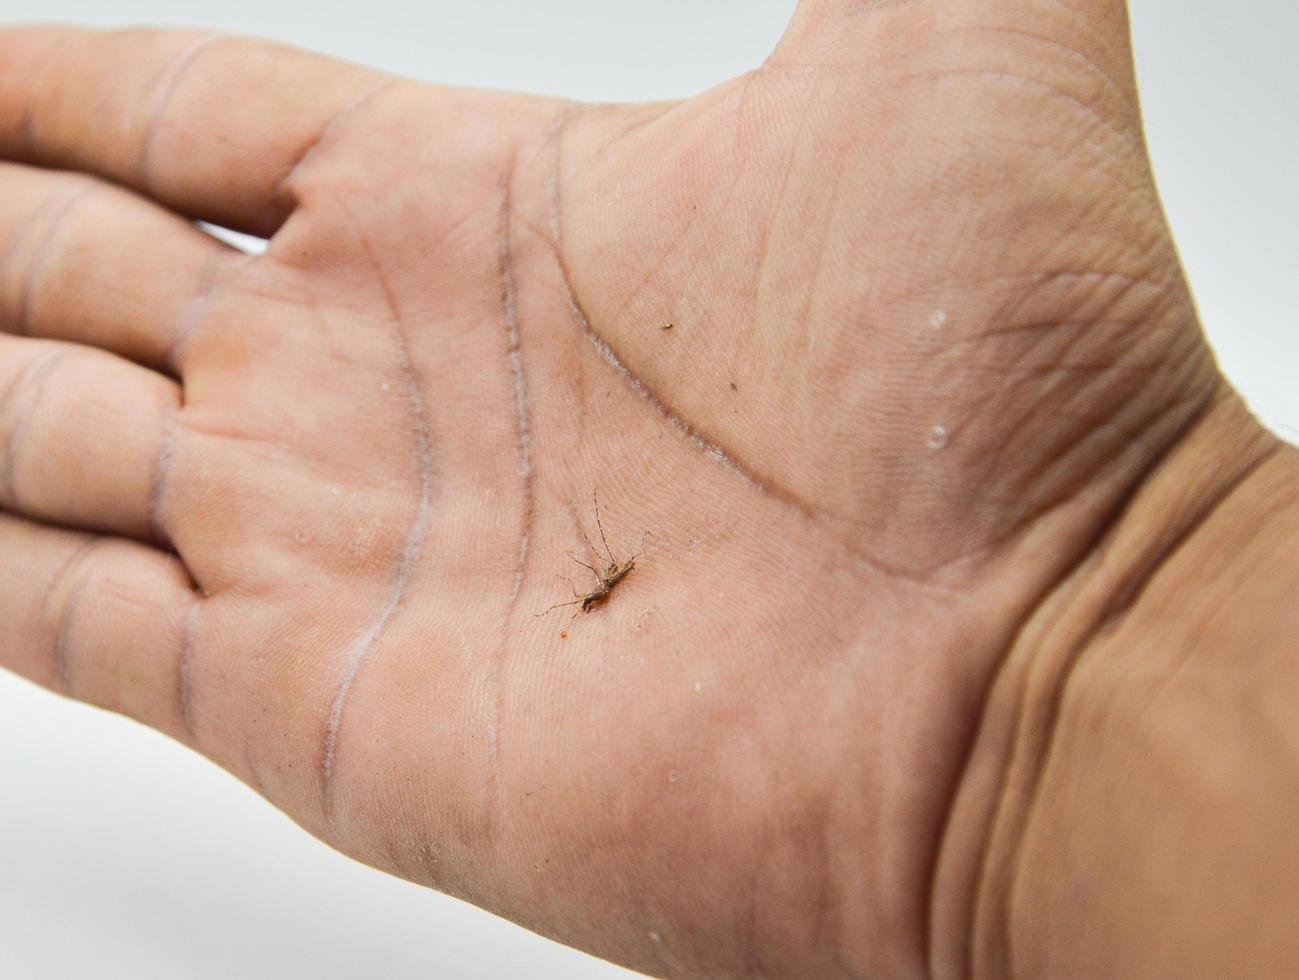 död- mygga på hand begrepp dengue feber malaria foto